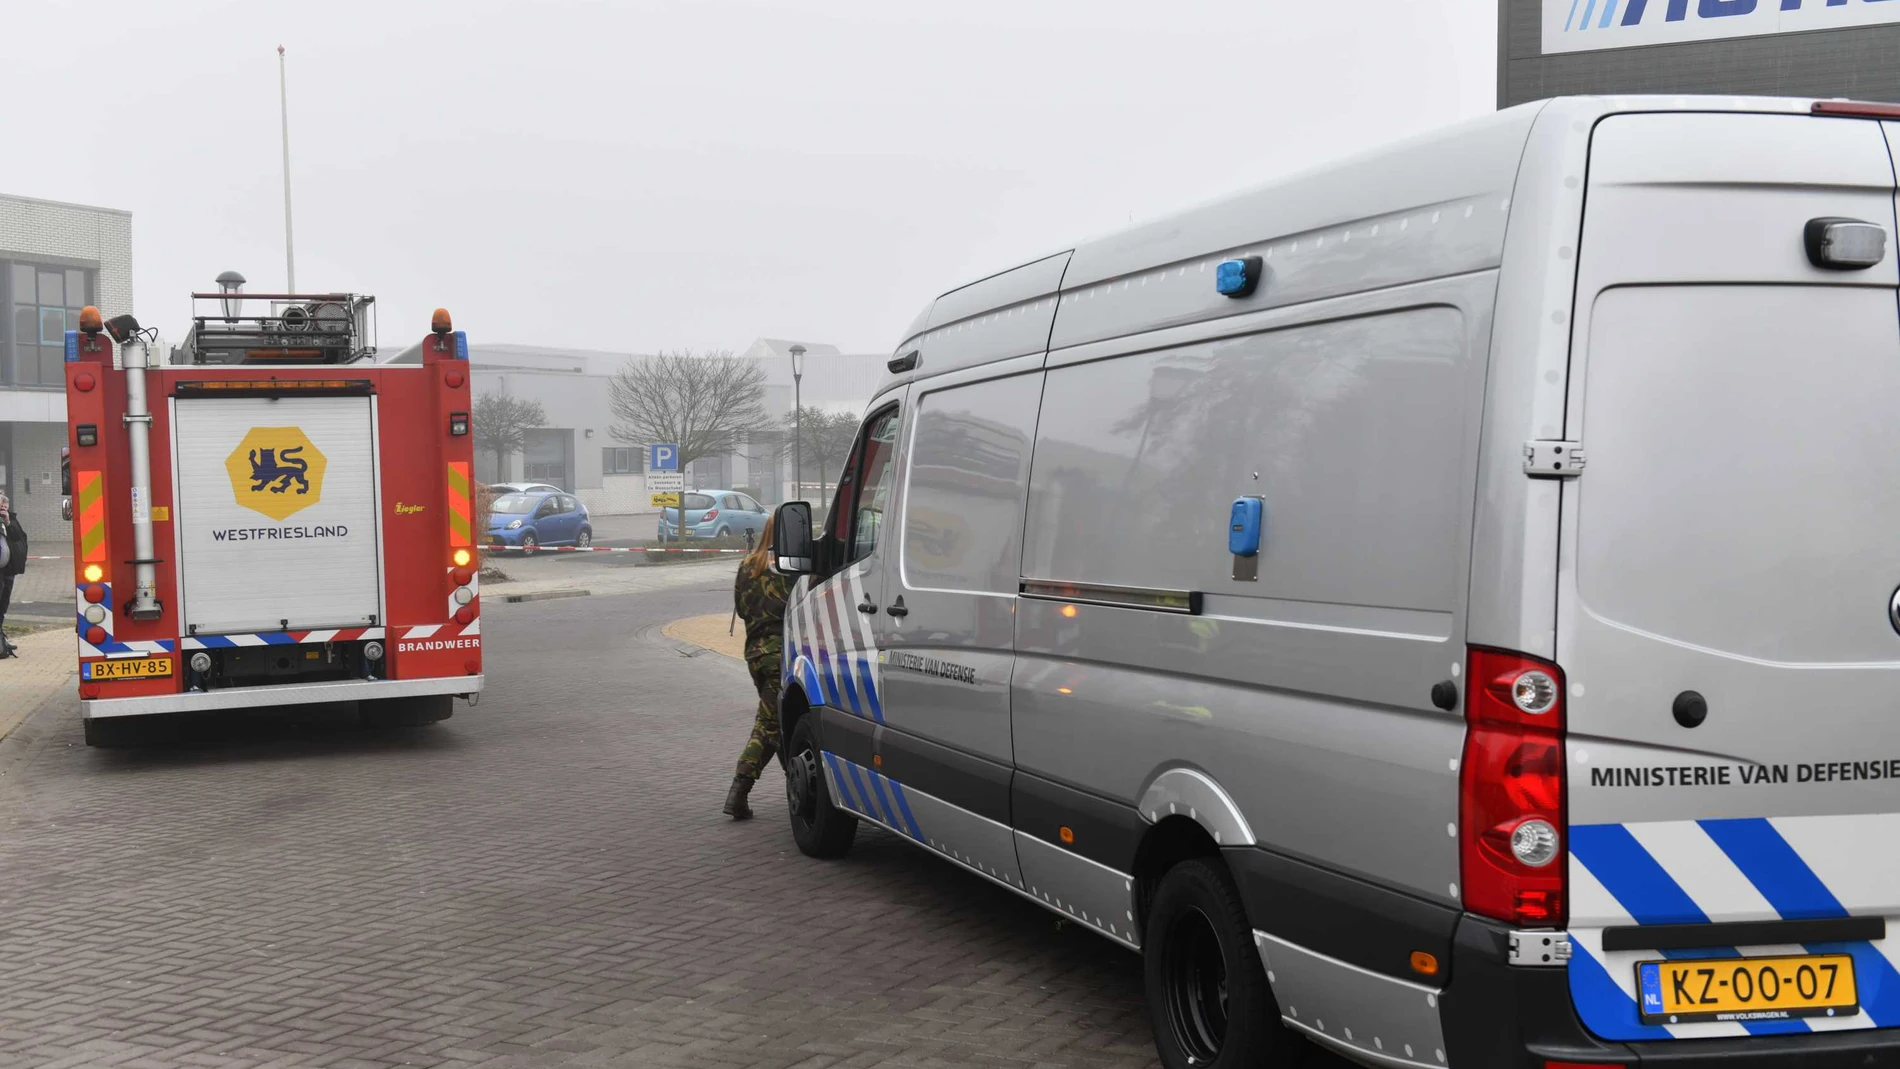 Servicios de emergencia llegan al lugar de la explosión en Bovenkarspel, al norte de Ámsterdam